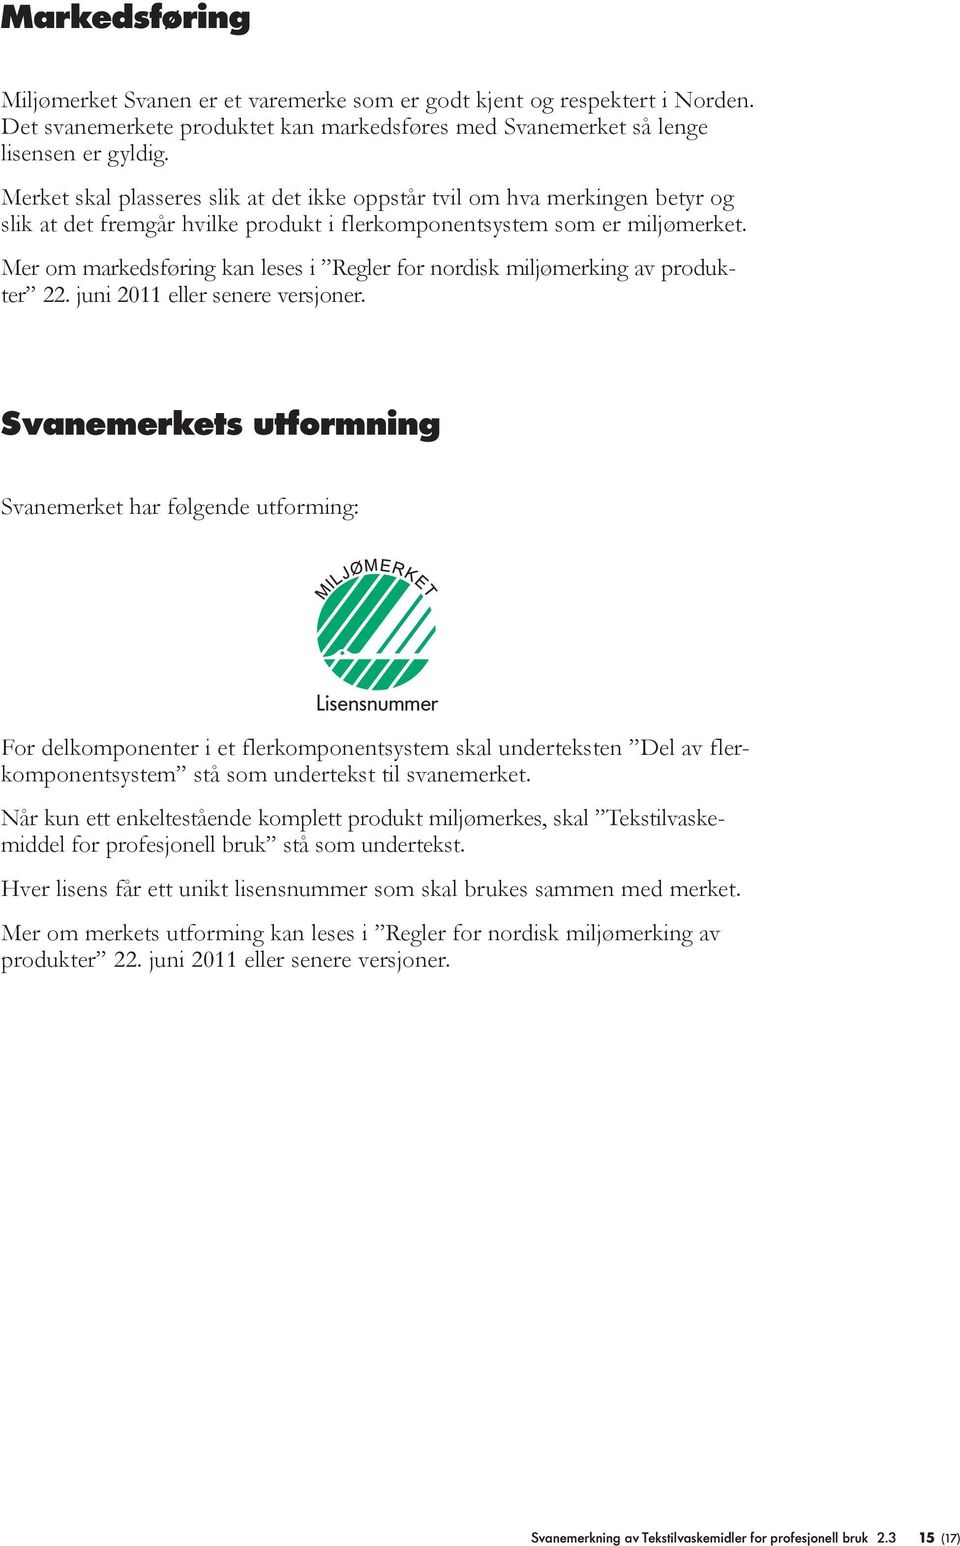 Mer om markedsføring kan eses i Reger for nordisk mijømerking av produkter 22. juni 2011 eer senere versjoner.